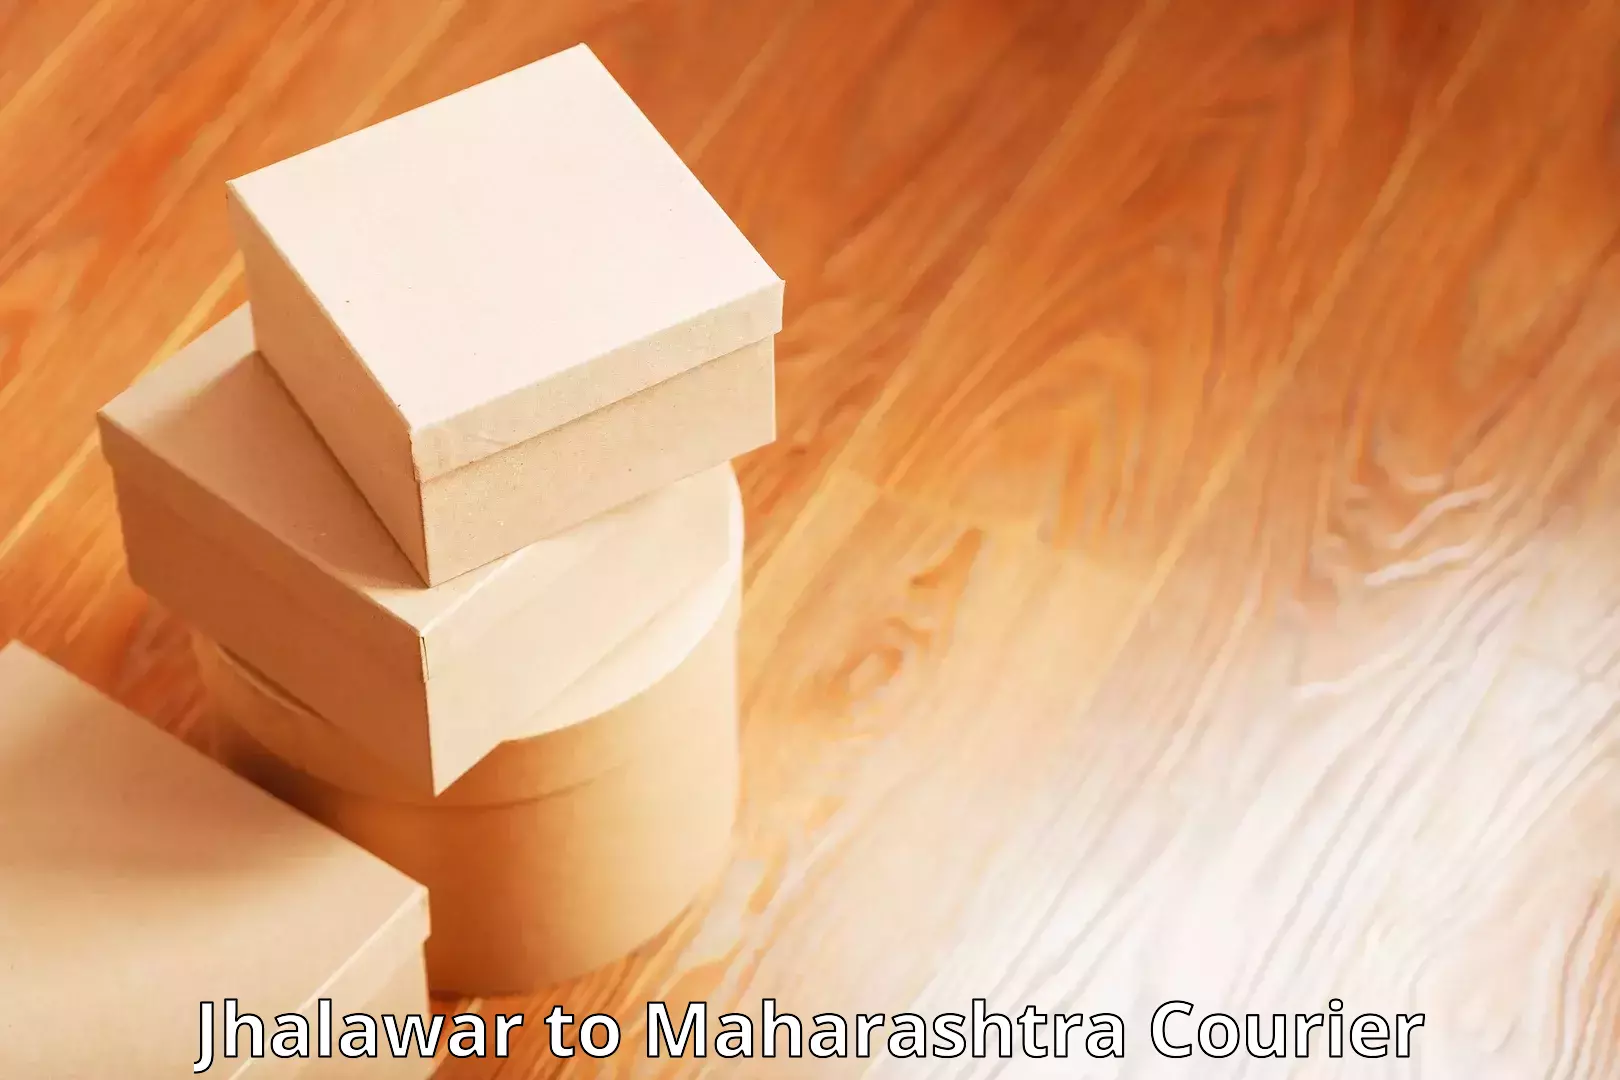 Cargo courier service Jhalawar to Maharashtra